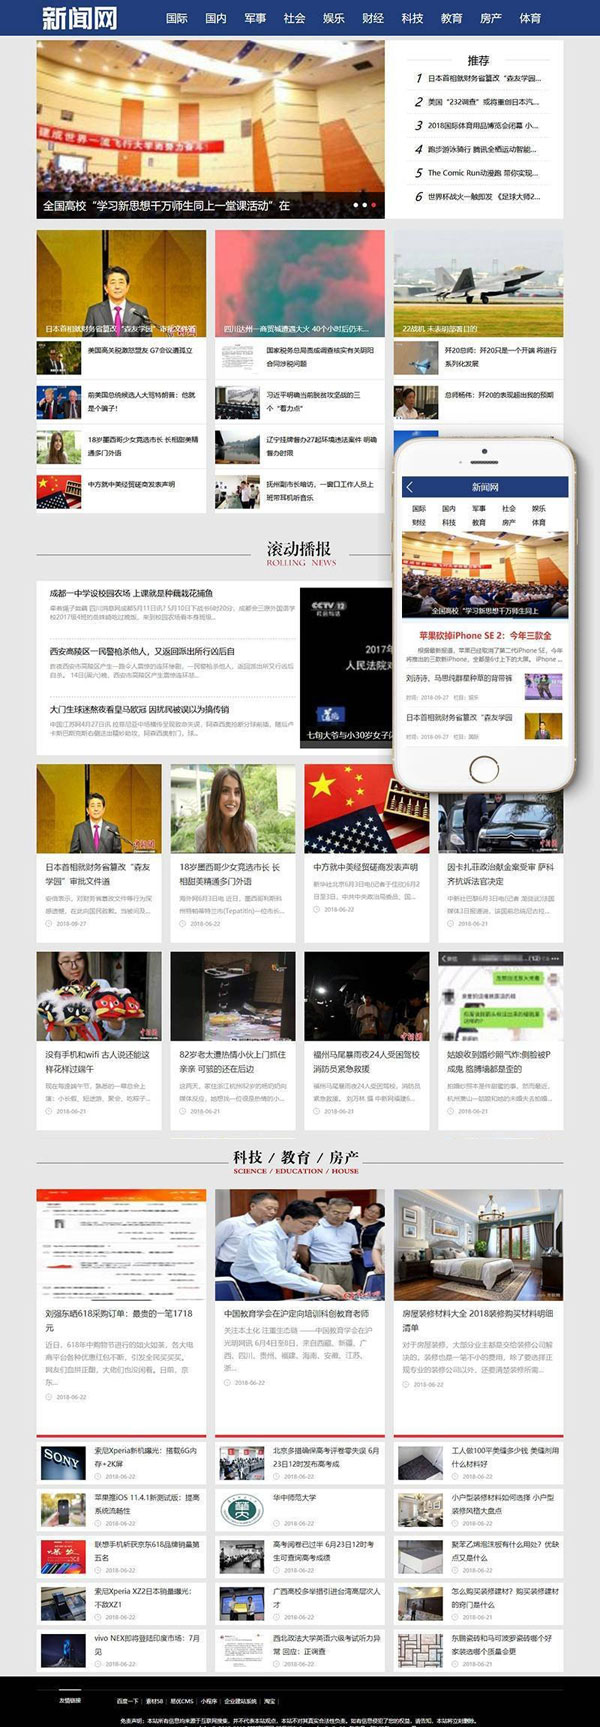 社会娱乐新闻网类网站MIPWordpress模板(三端同步)效果图